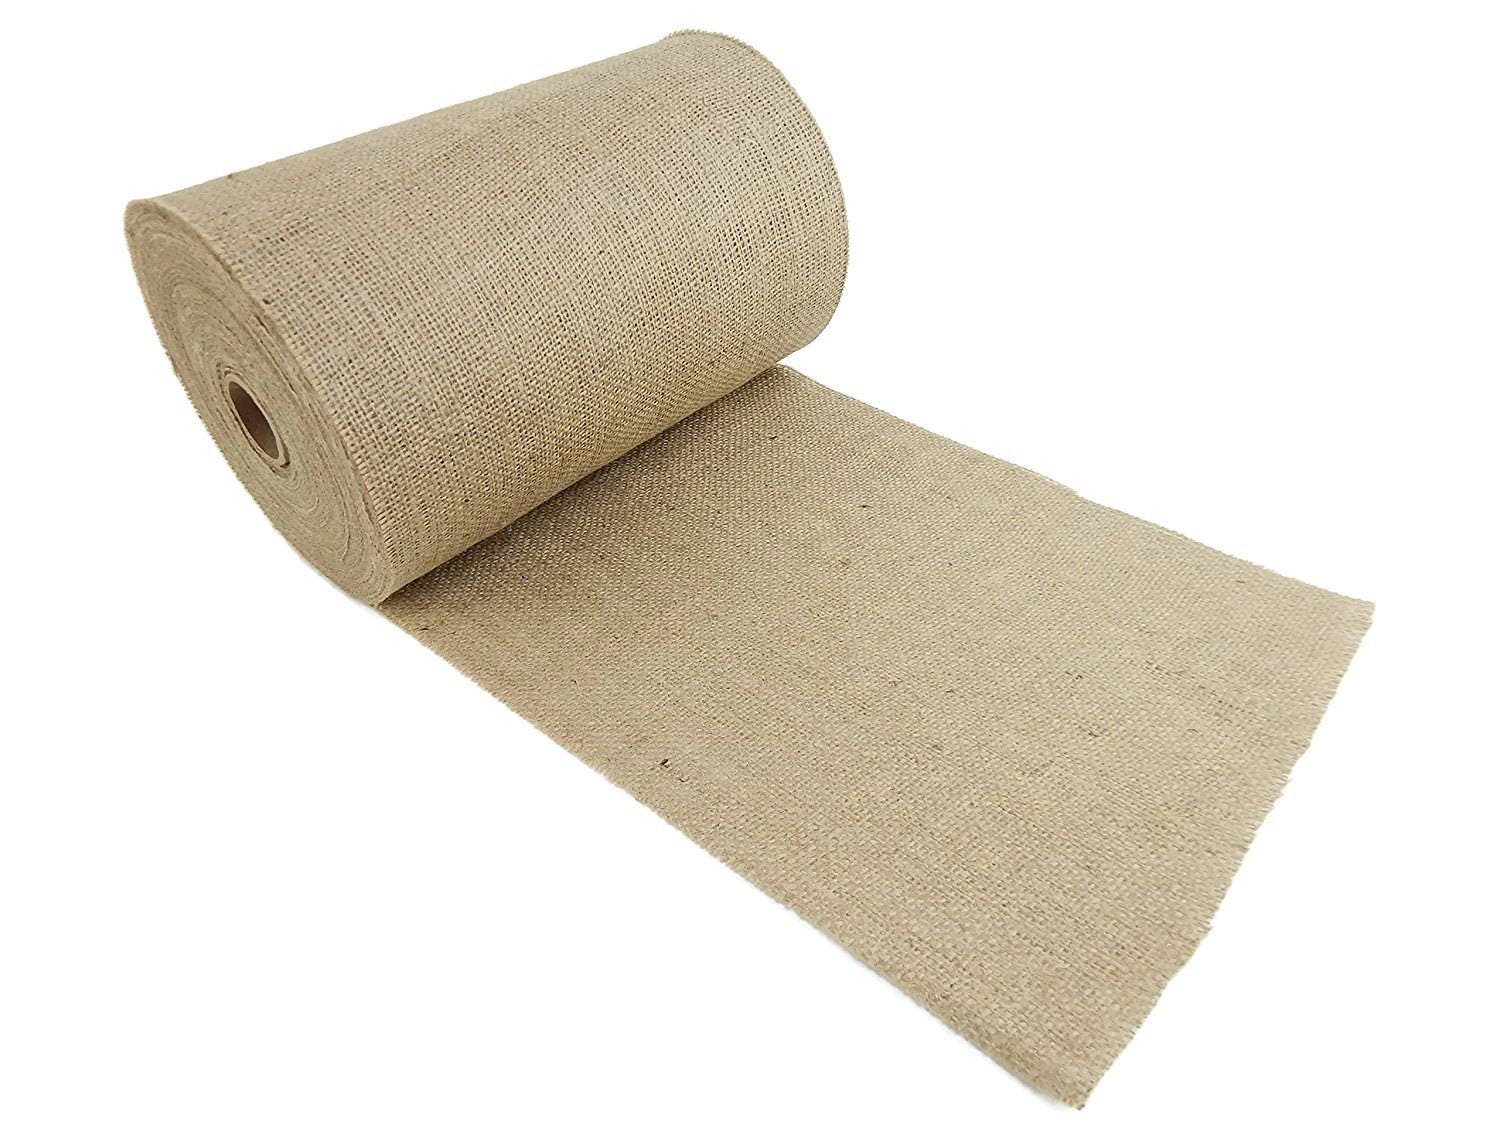 10m Burlap Roll,6 Inch Burlap Fabric Ribbon Wrap,hessian Jute